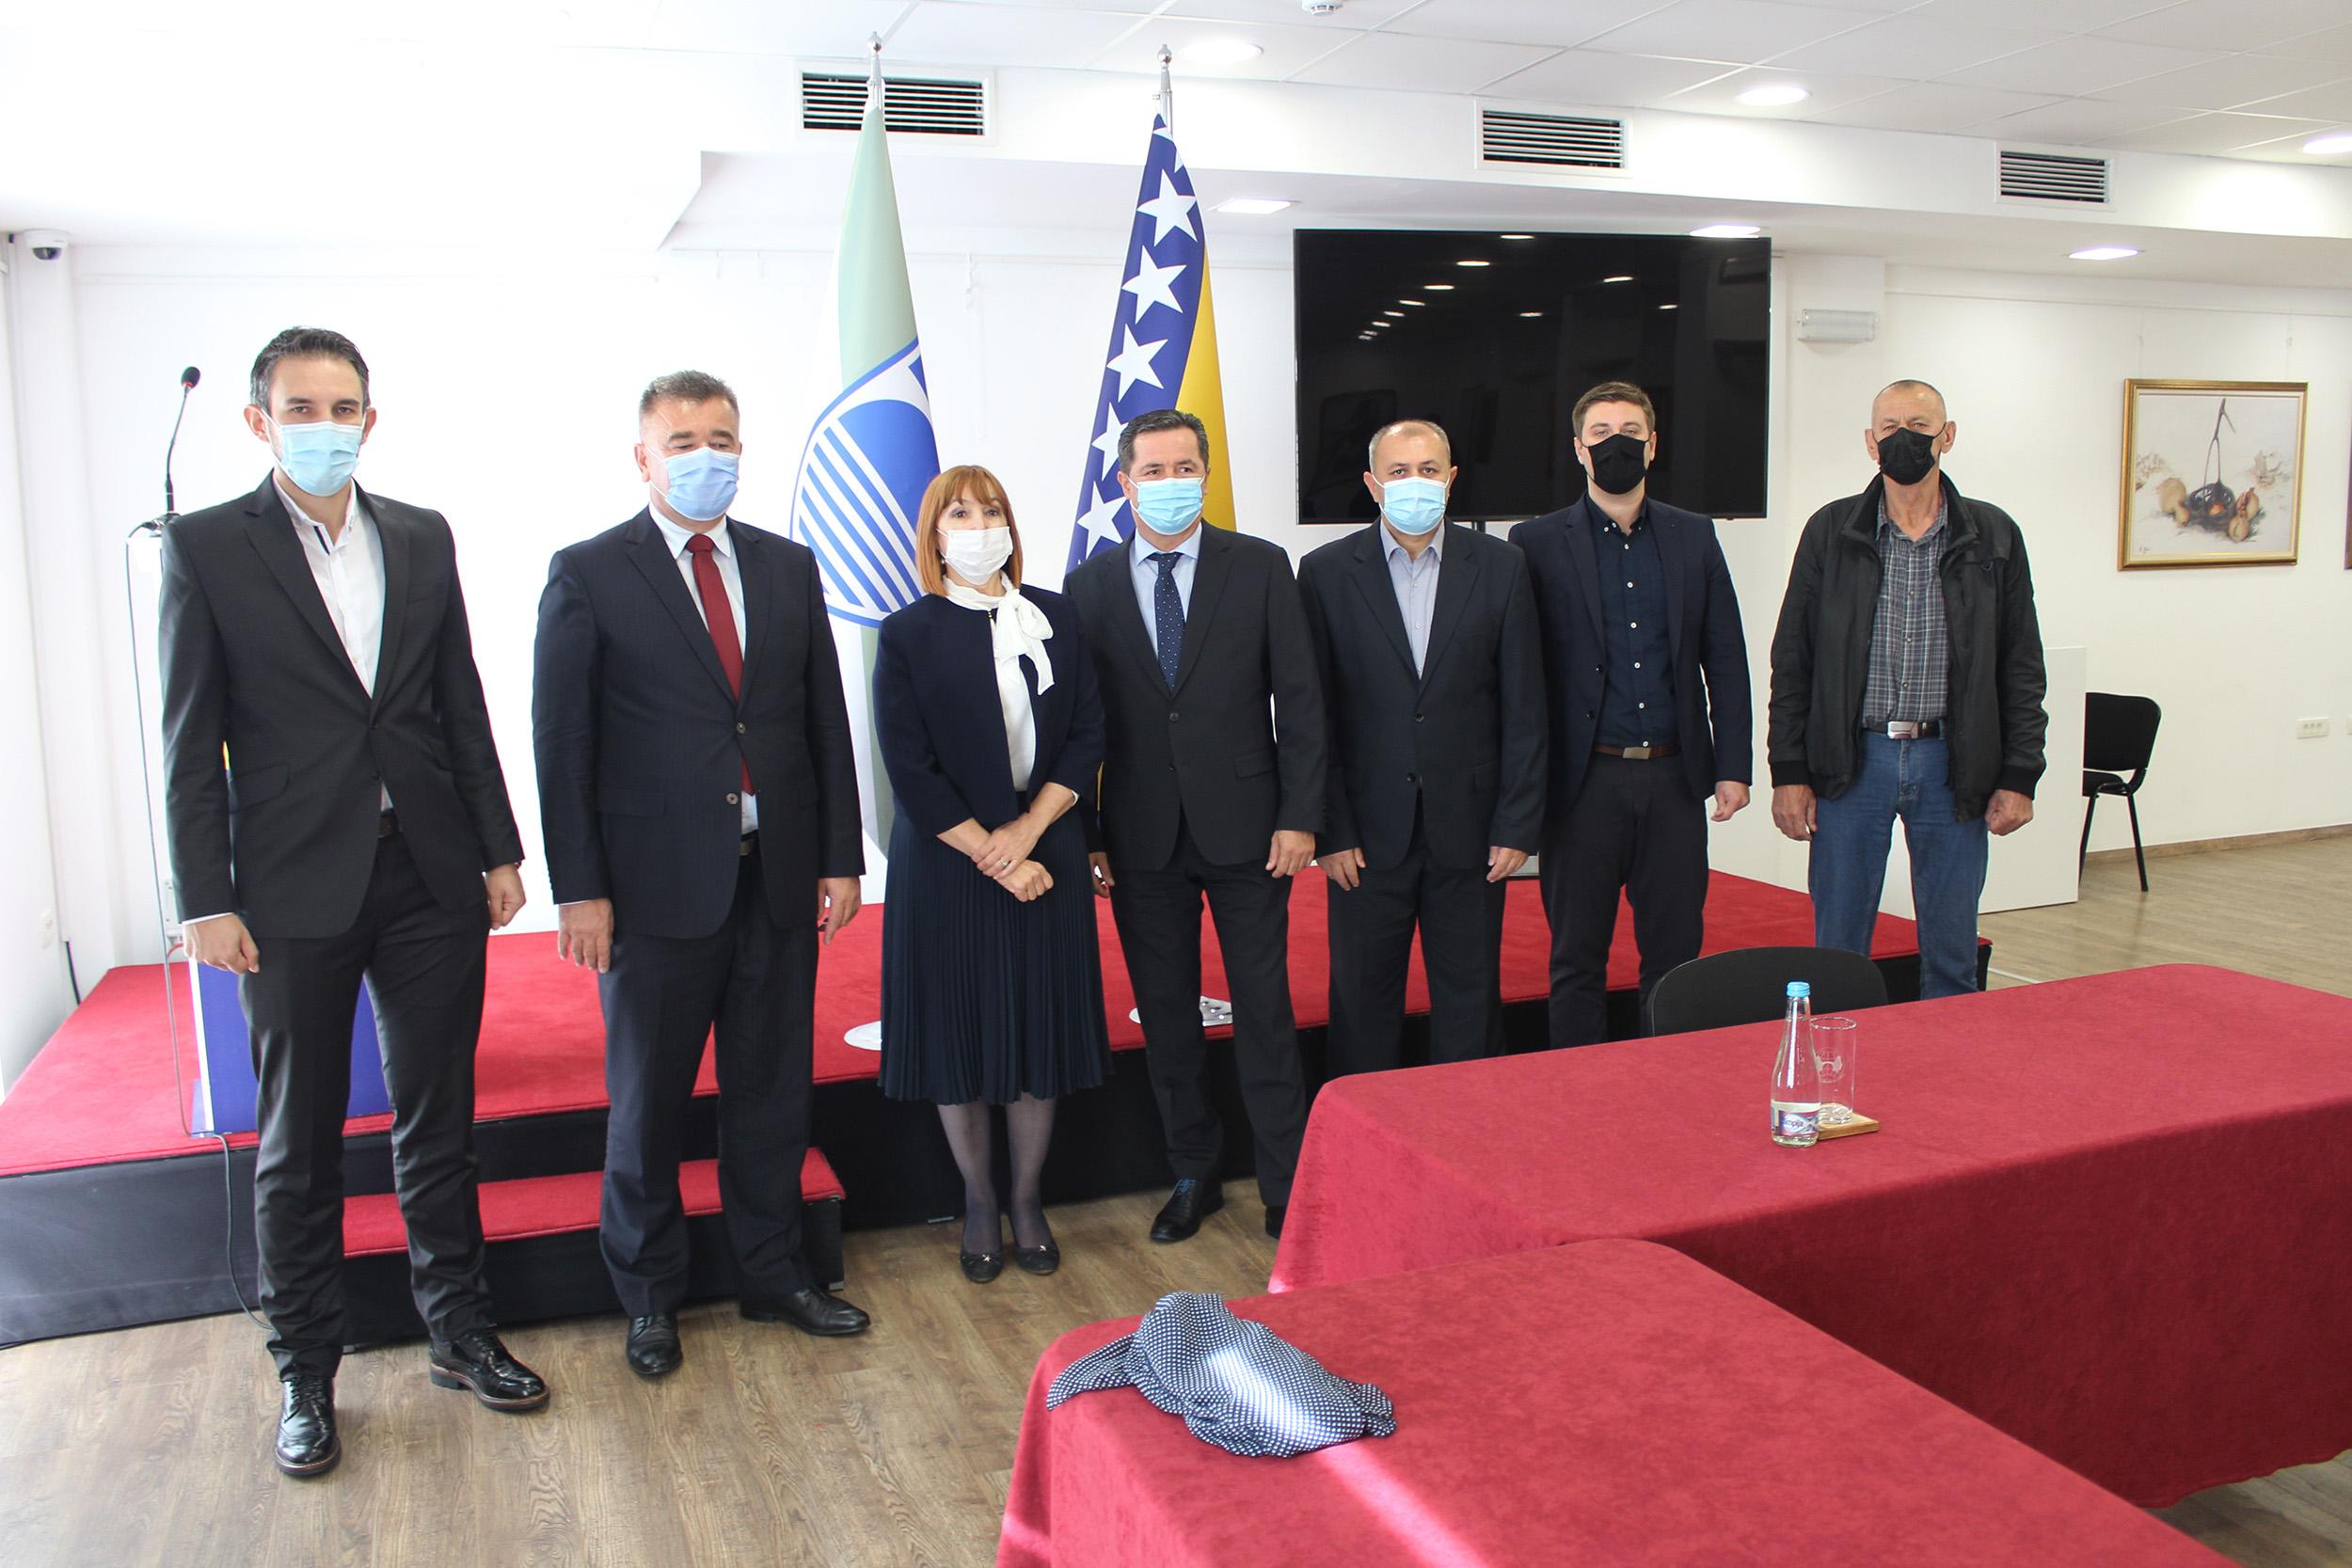 Mahmutbegović razgovarala s predstavnicima Koalicije, Mostar je iznad svake politike